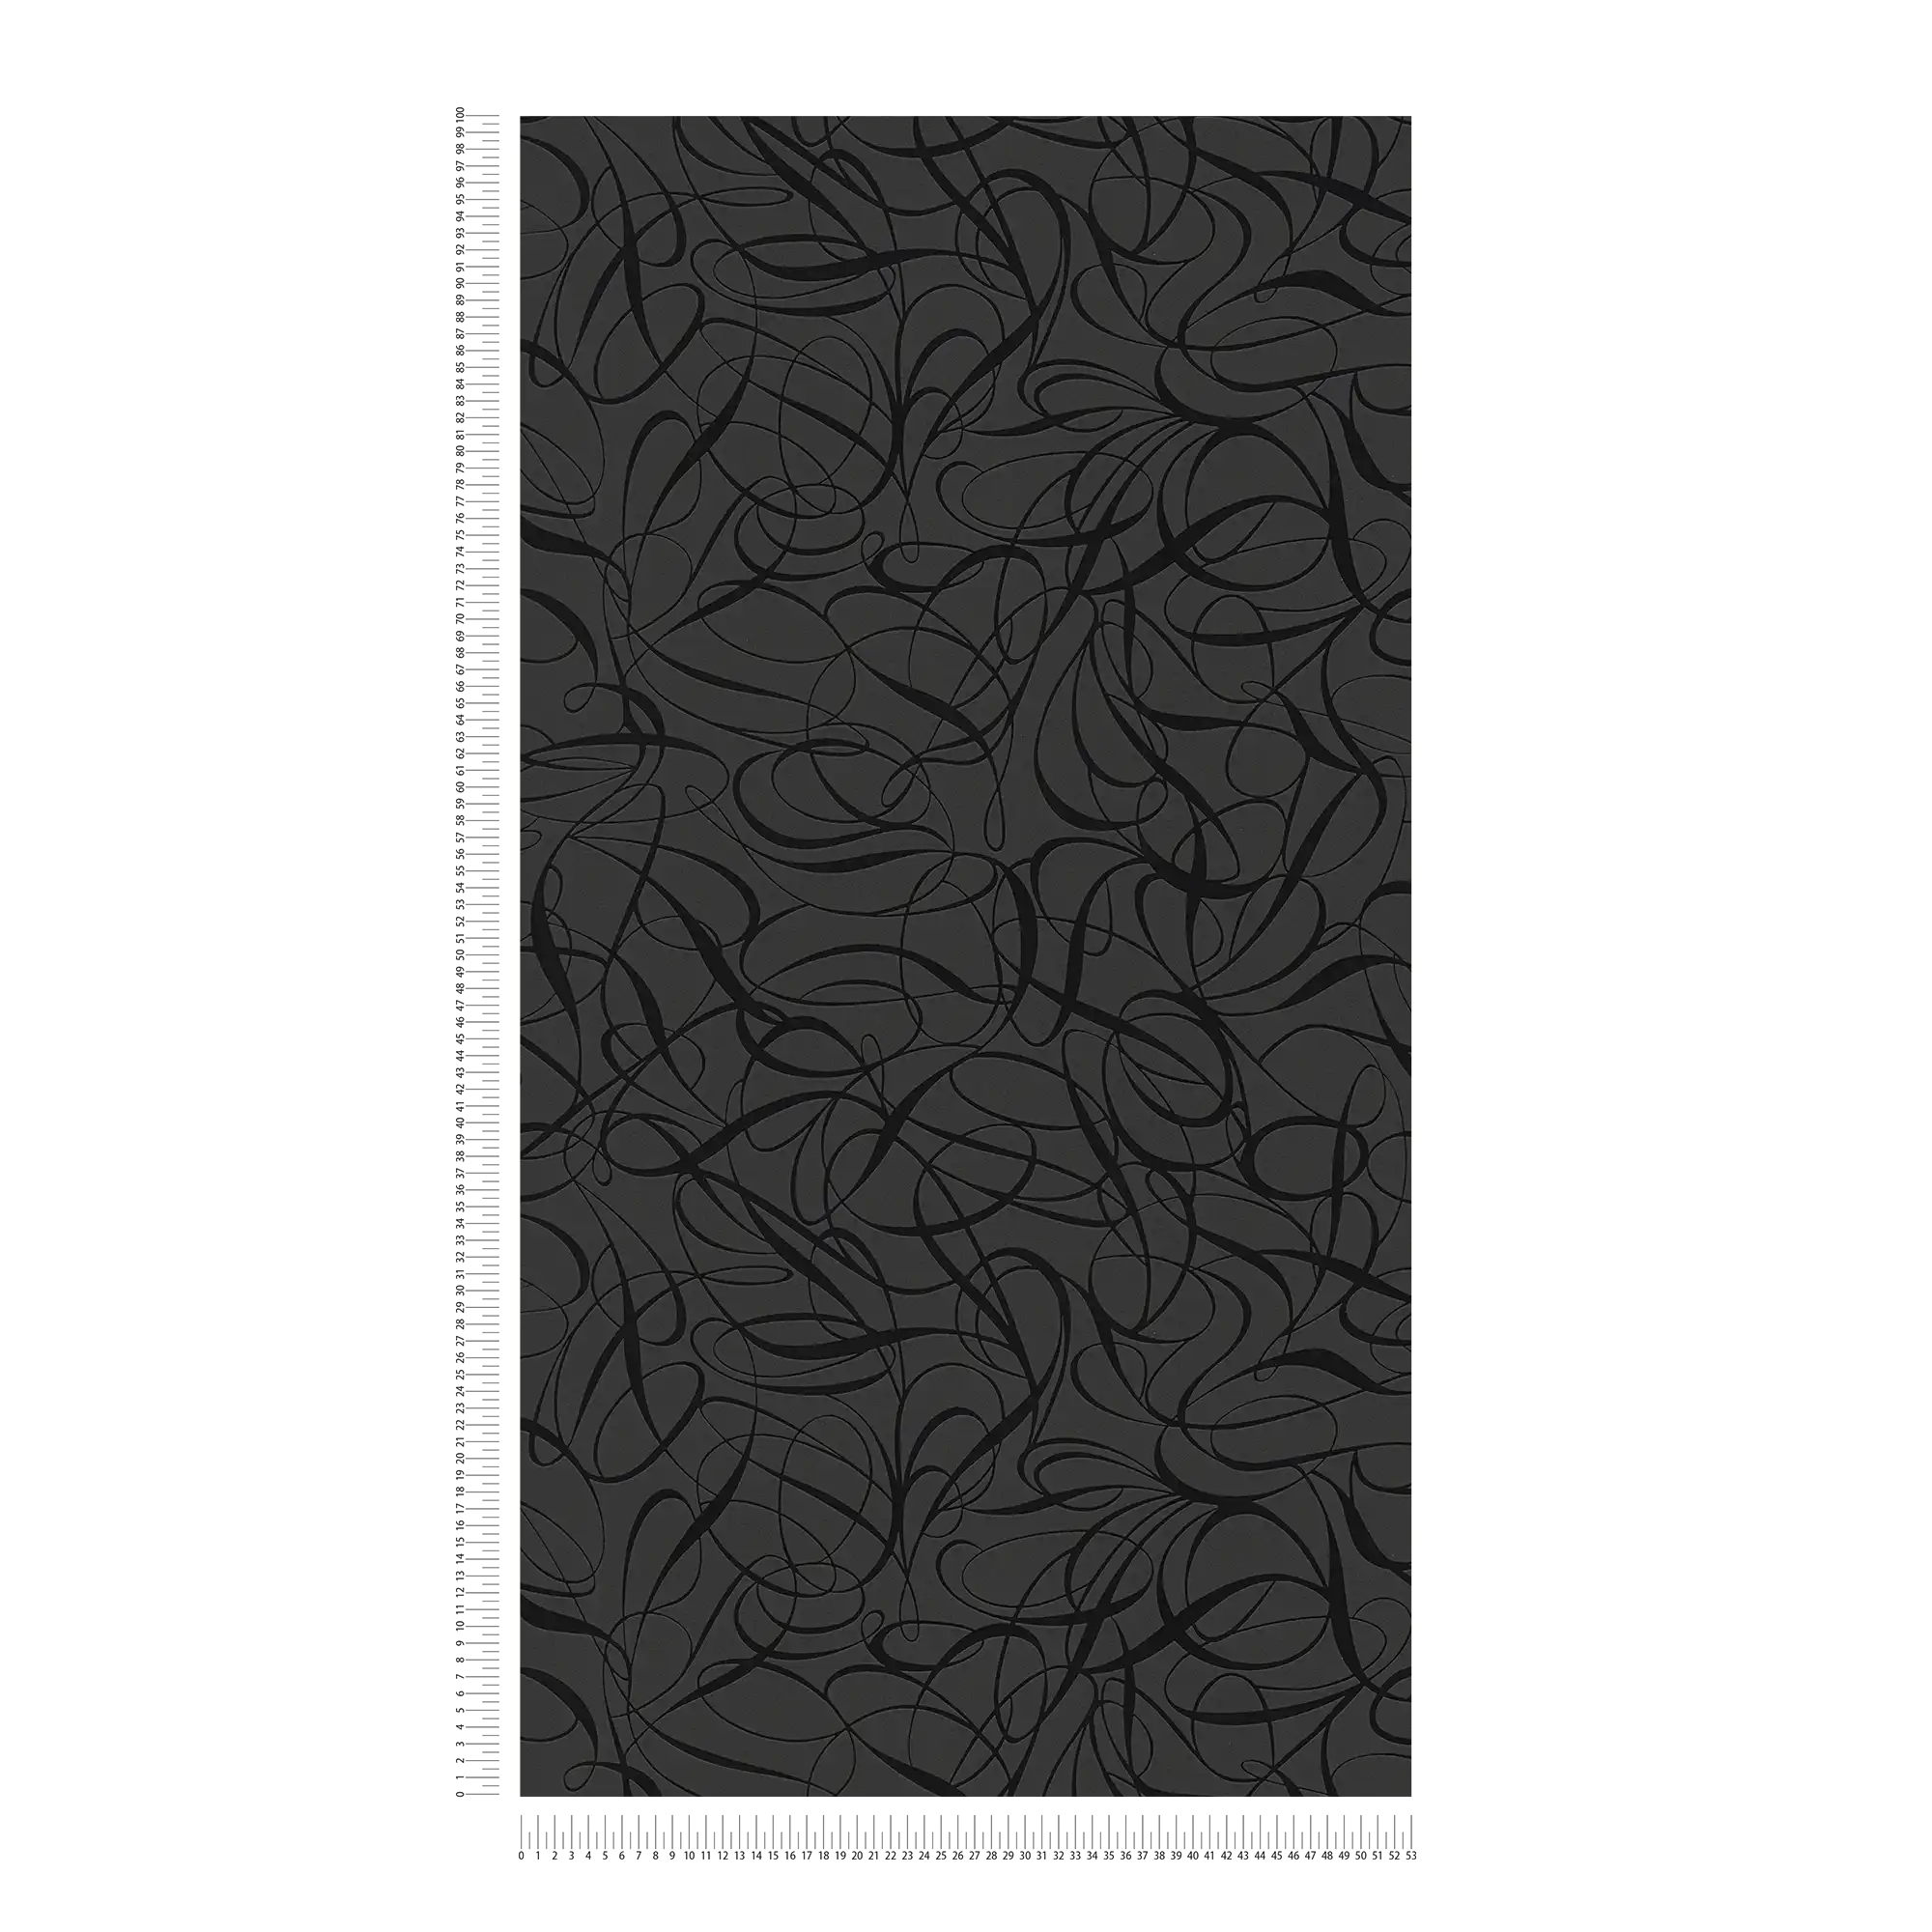             Papel pintado no tejido de líneas y efecto brillante - negro, metálico
        